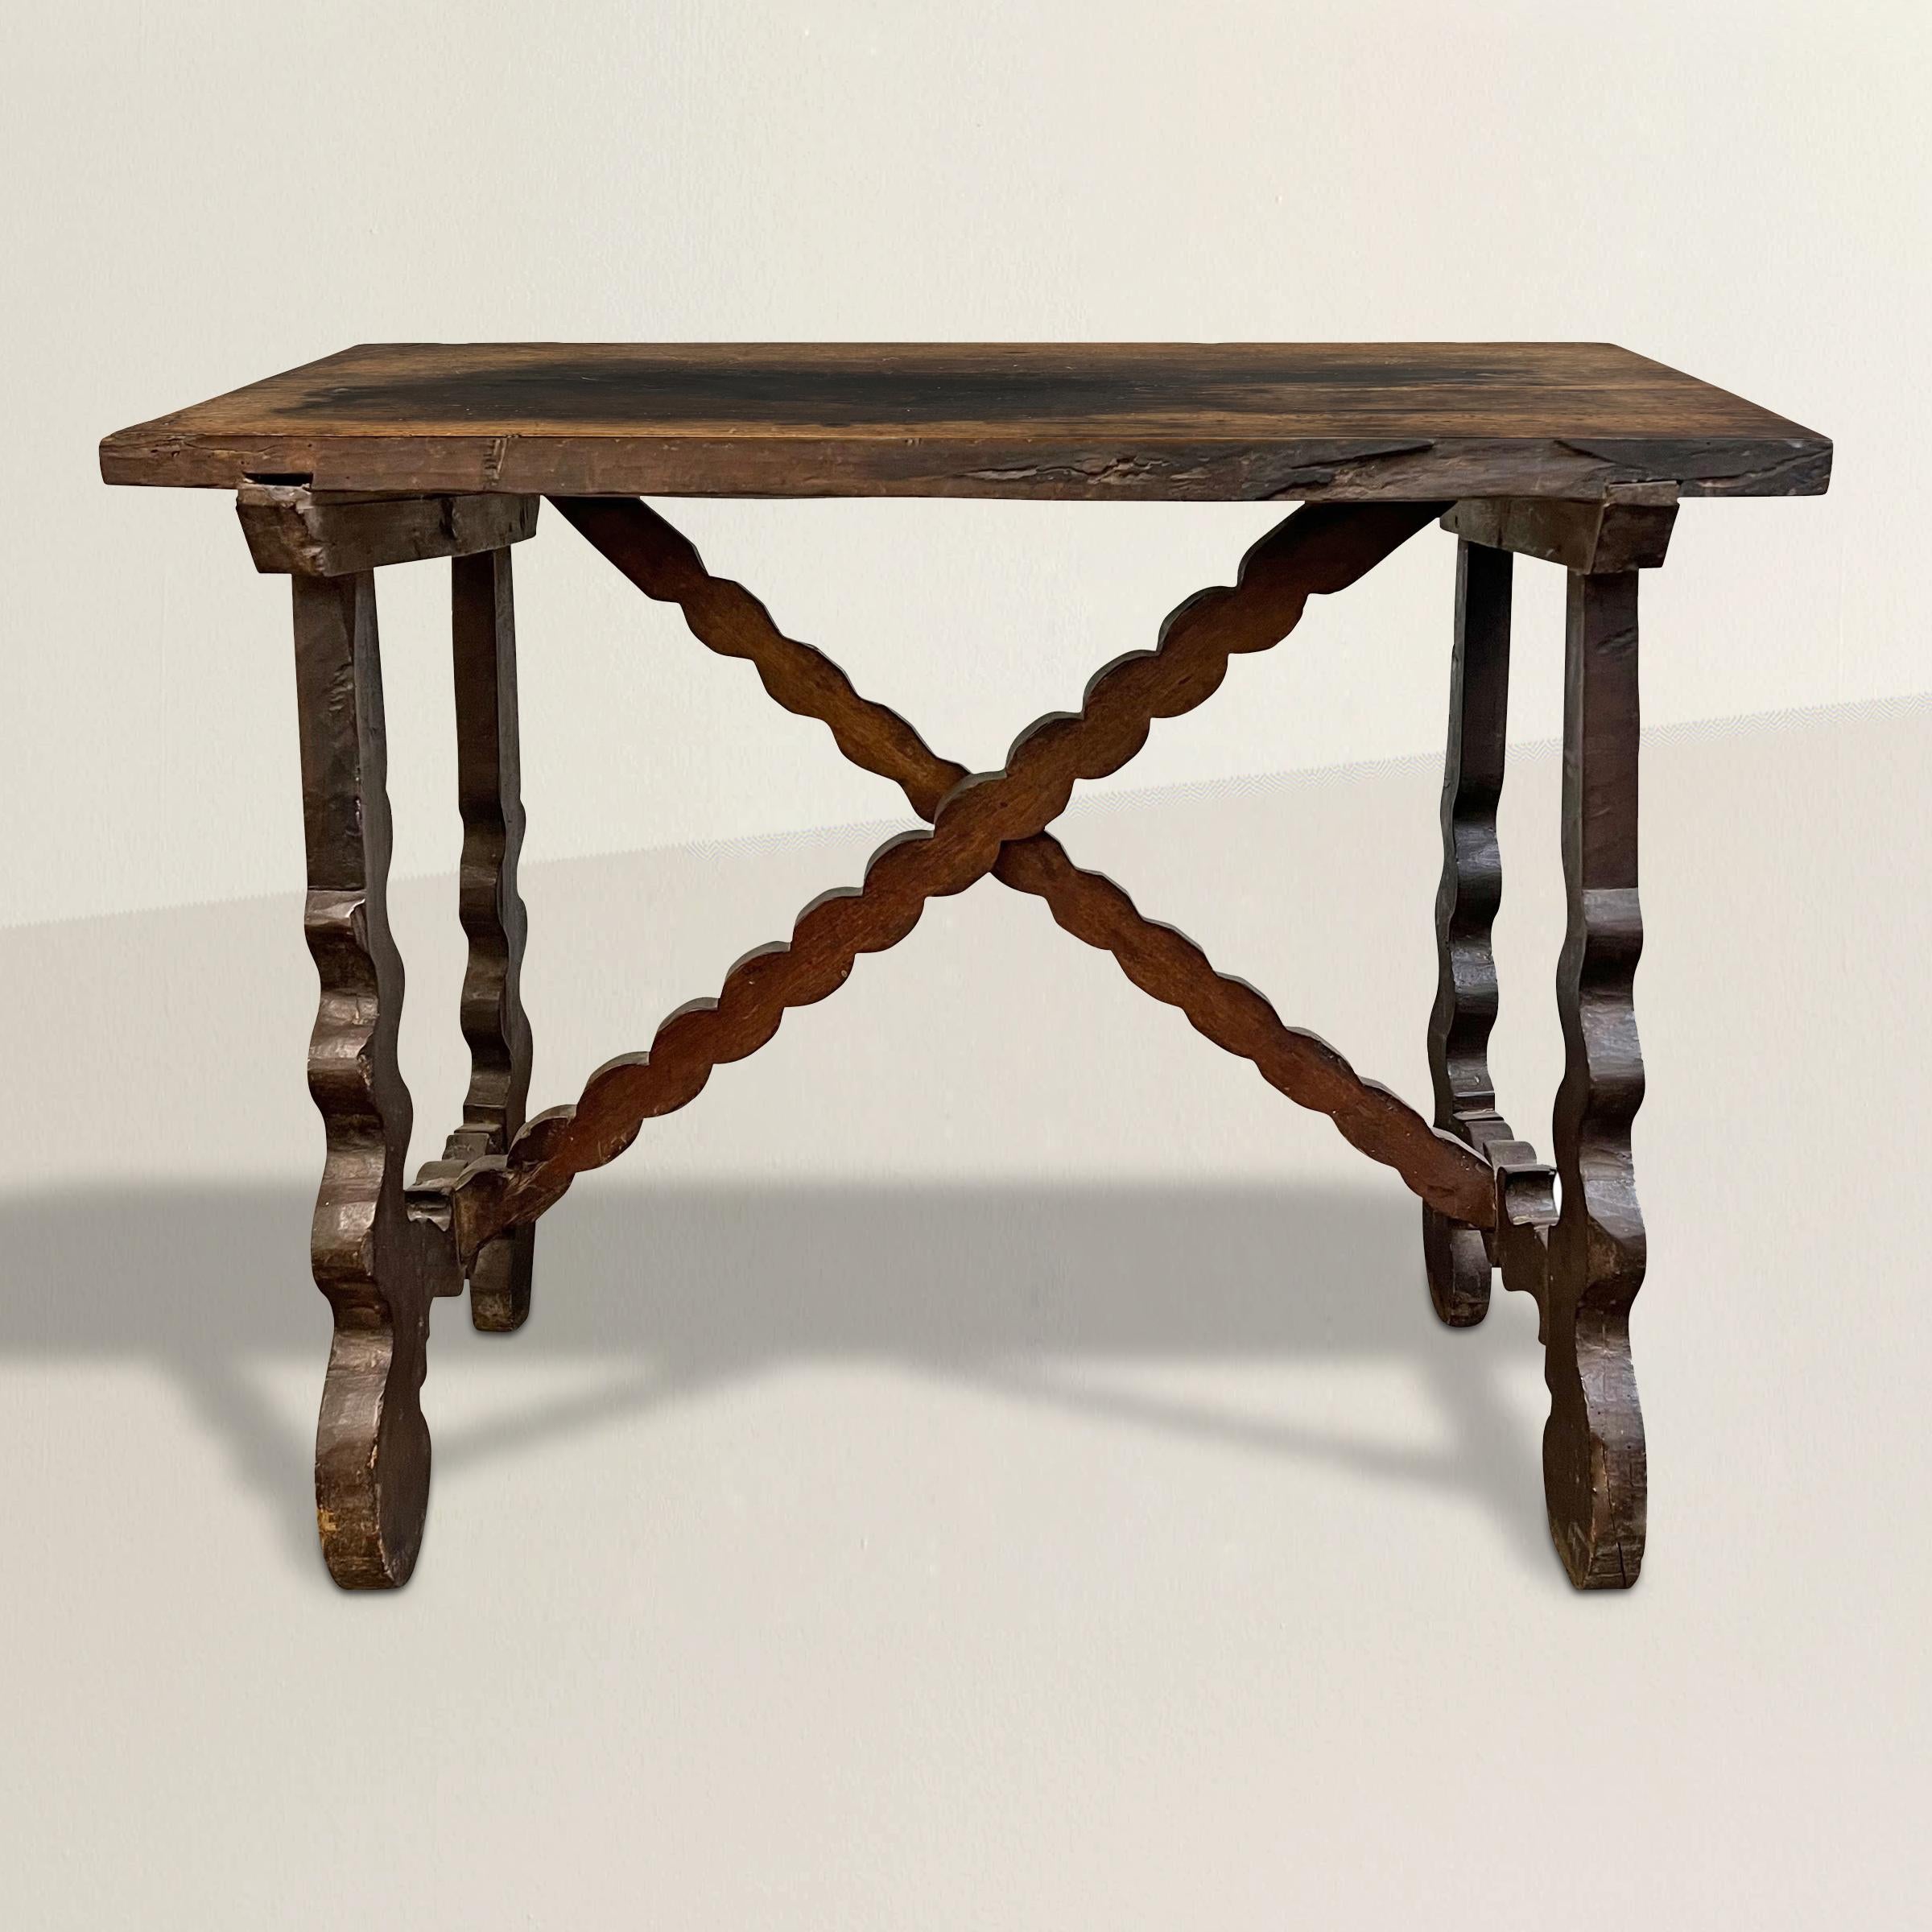 Tauchen Sie ein in die reiche Geschichte Norditaliens mit diesem exquisiten italienischen Barocktisch aus Nussbaumholz aus dem 18. Jahrhundert, ein wahres Zeugnis der Handwerkskunst und des künstlerischen Erbes der Region. Dieser aus luxuriösem